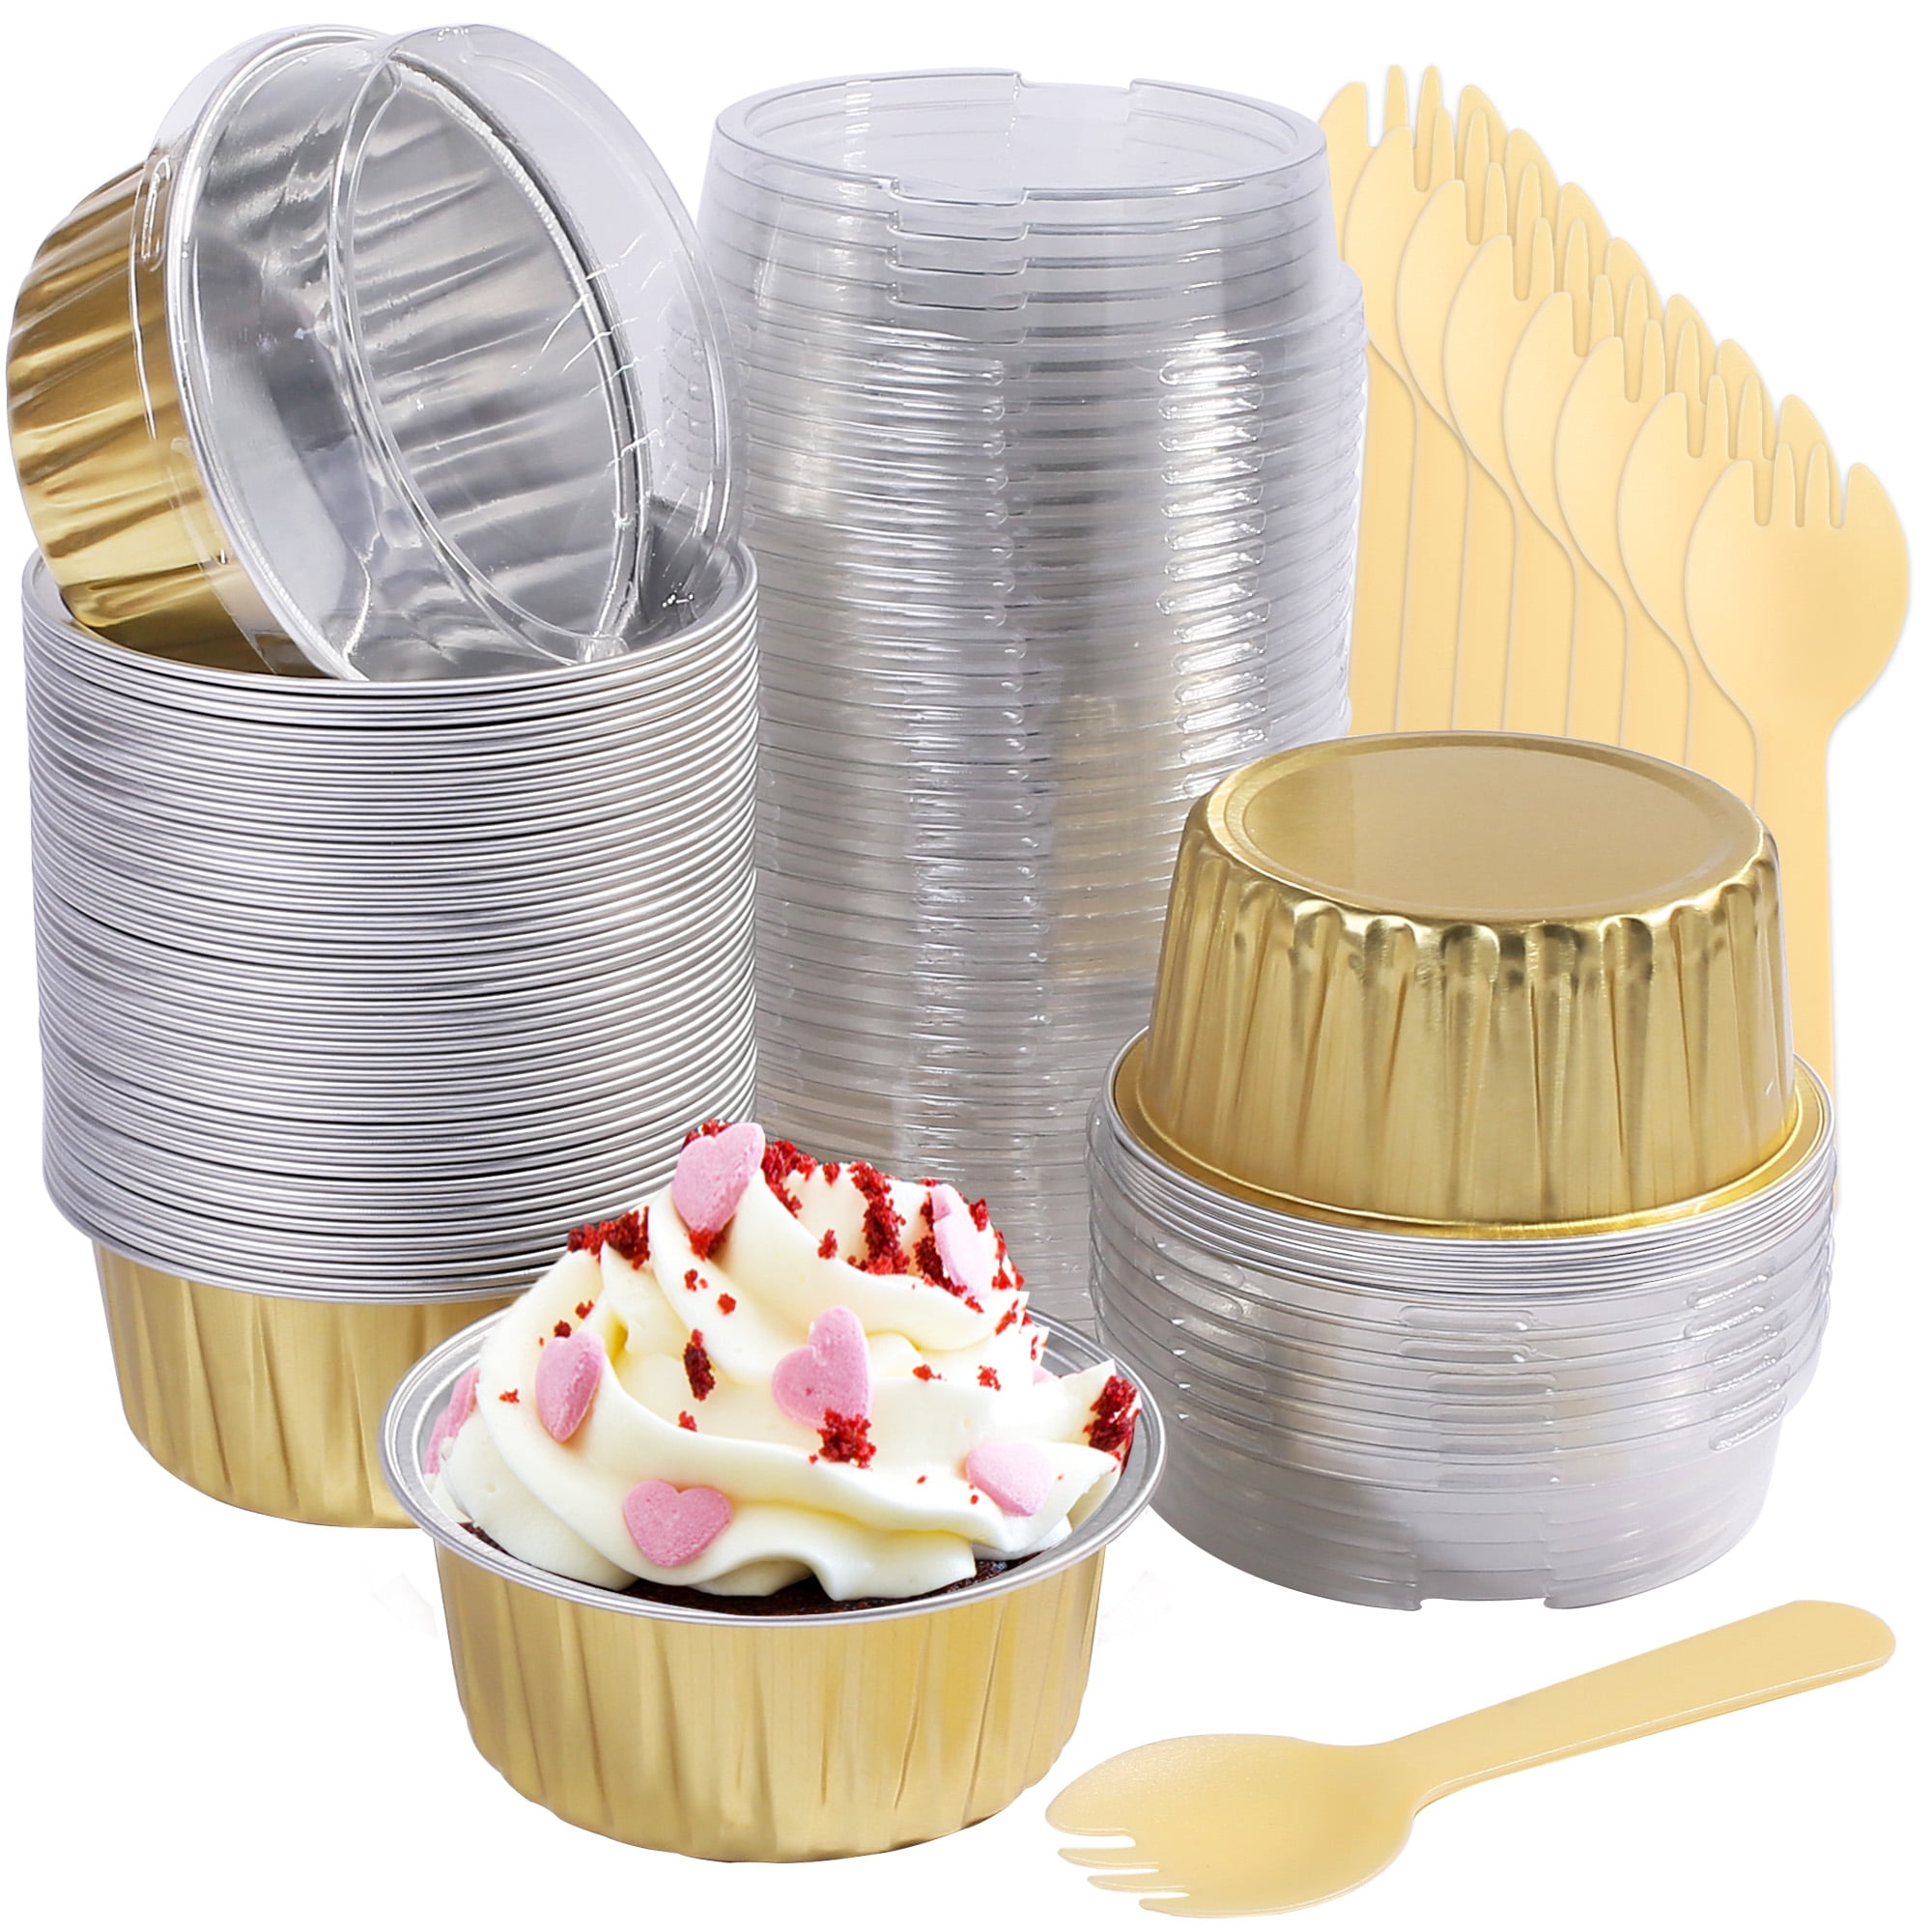 LotFancy 50Pack Aluminum Foil Baking Cups with Lids, 5oz Foil Ramekins with  Lids, Gold 